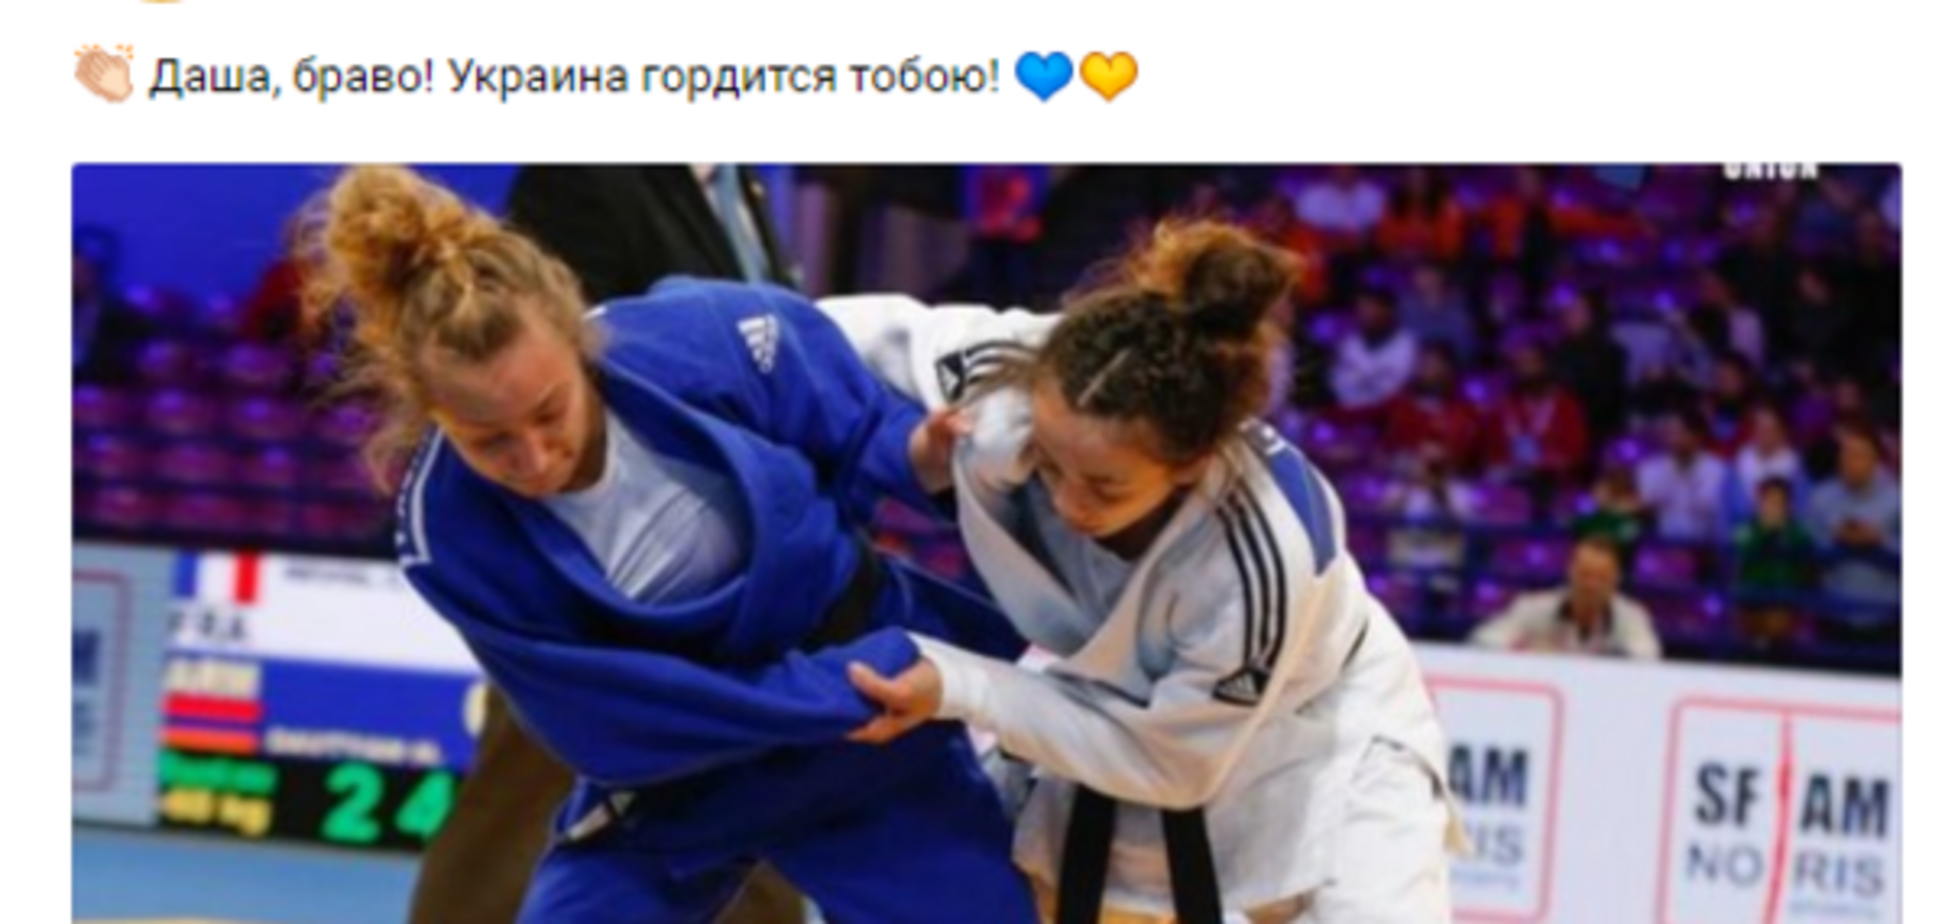 Украина сделала золотой дубль на чемпионате Европы по дзюдо